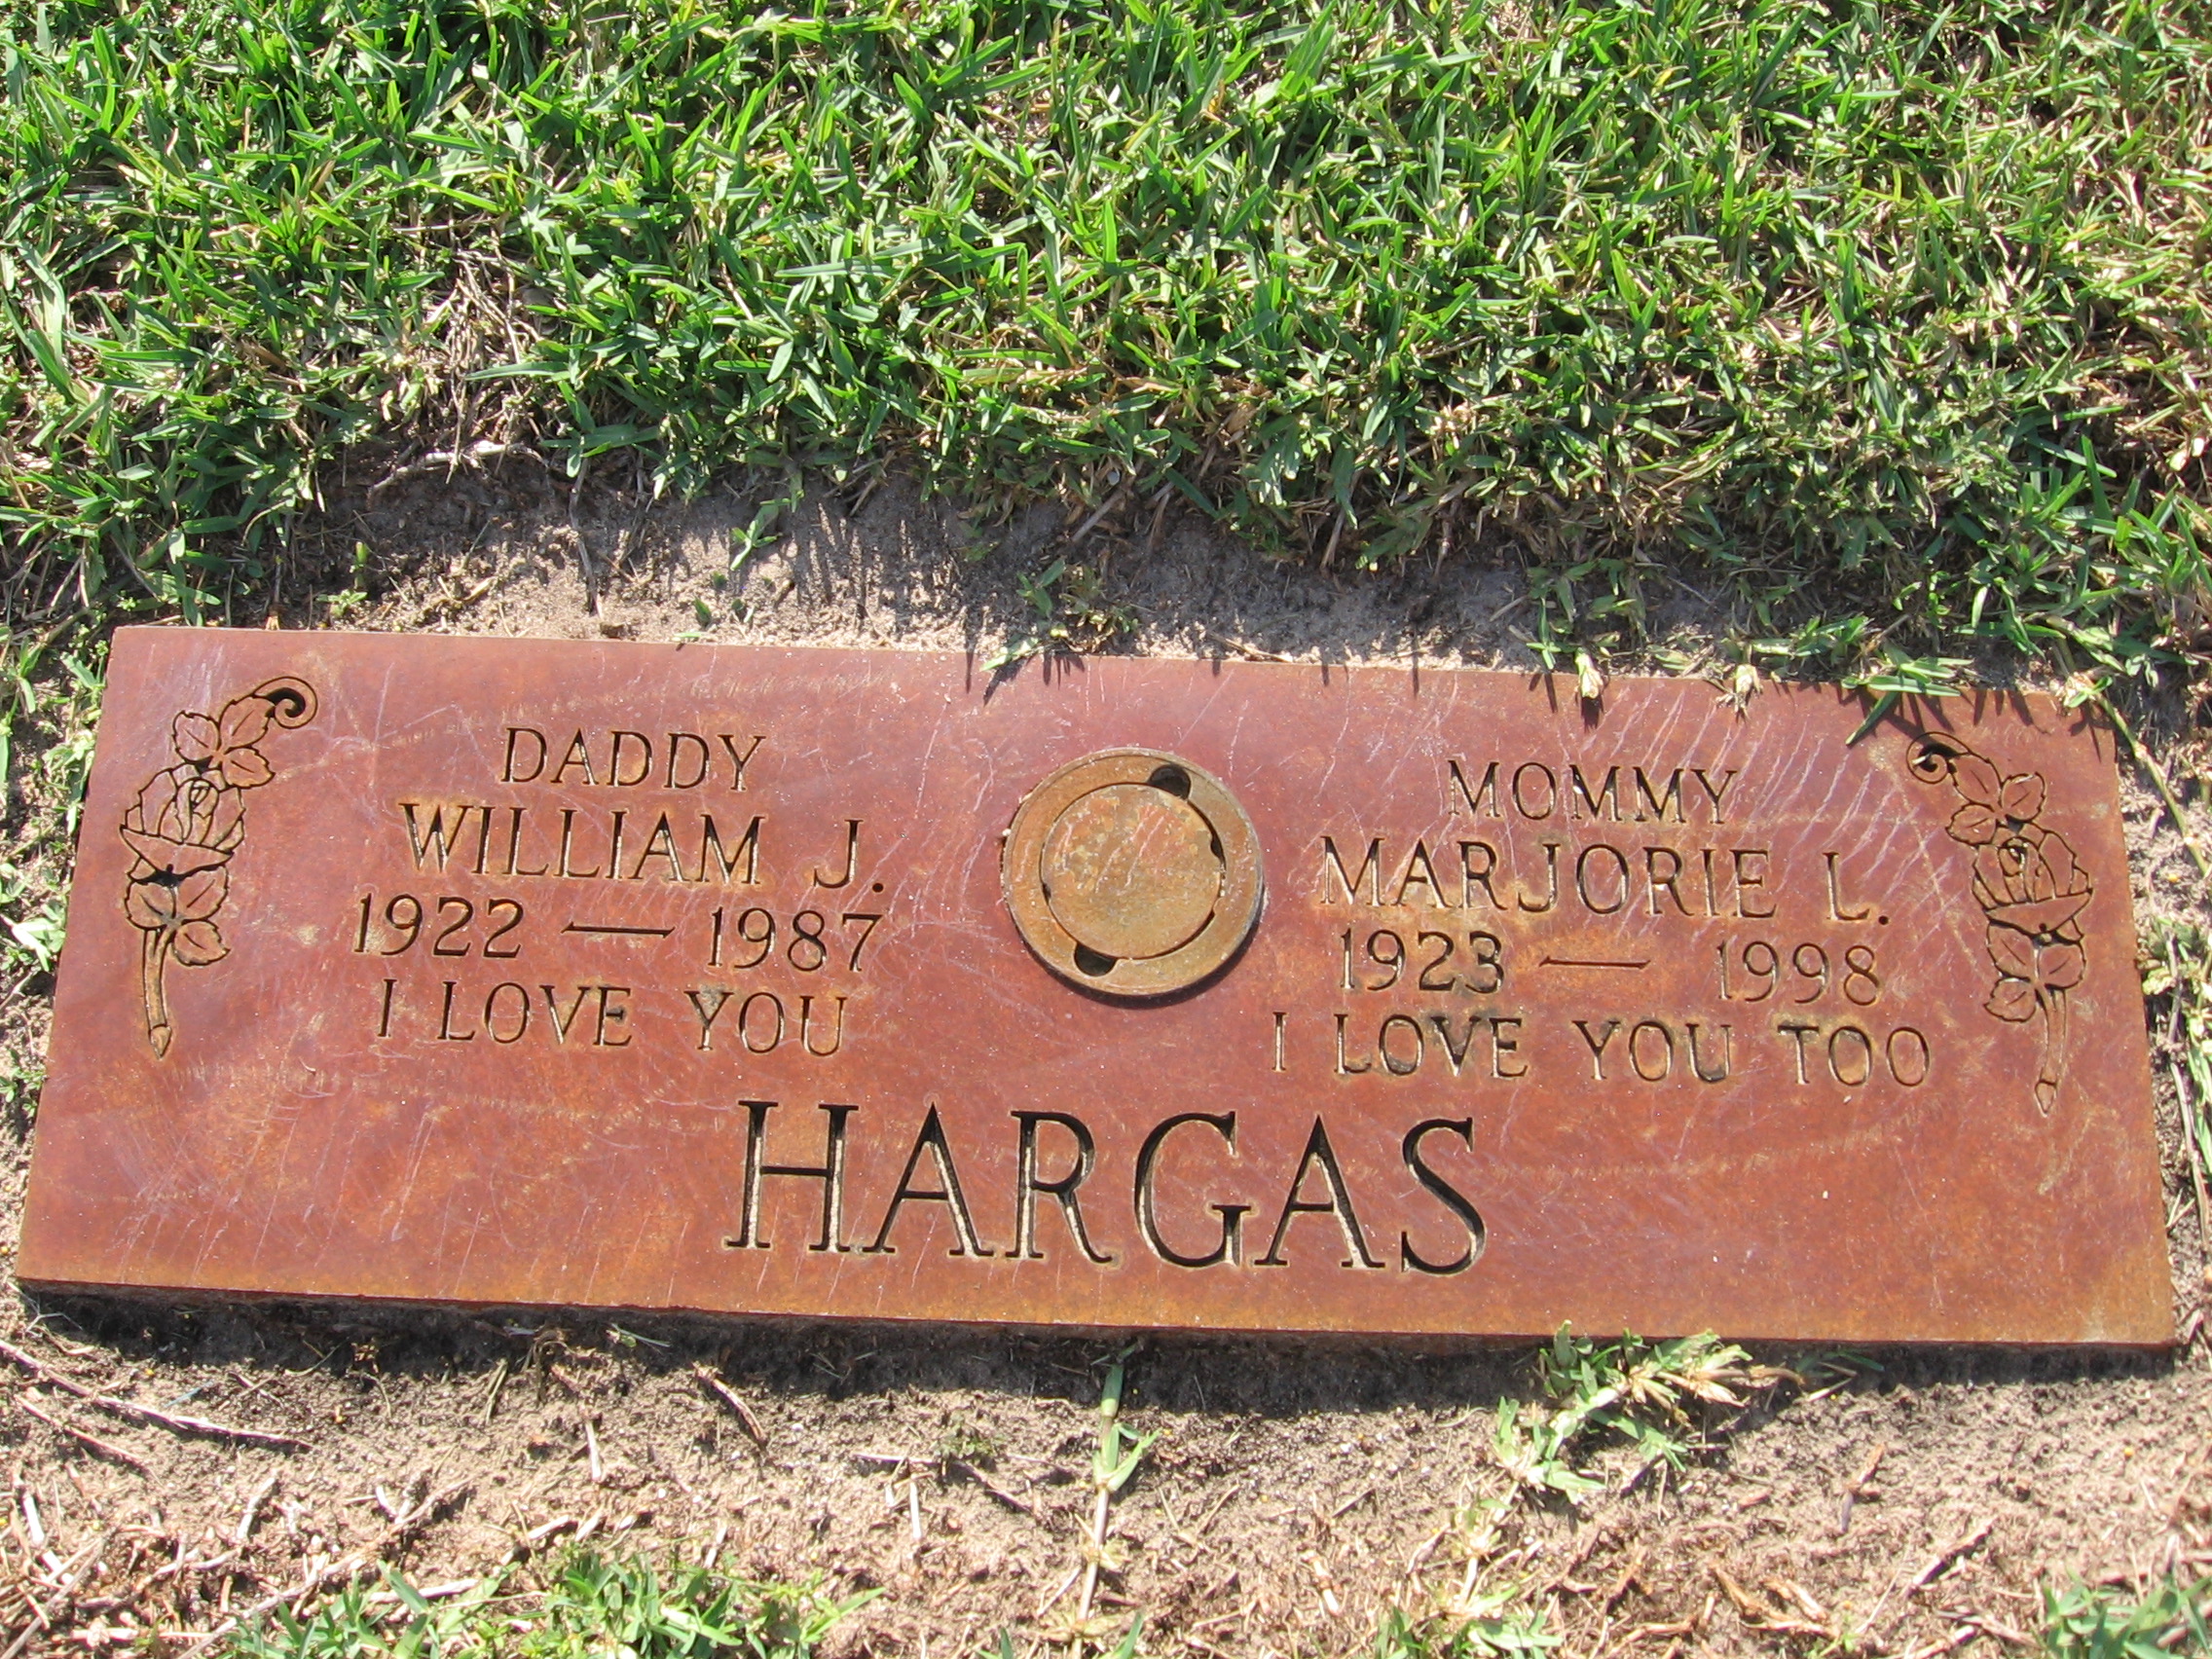 William J Hargas